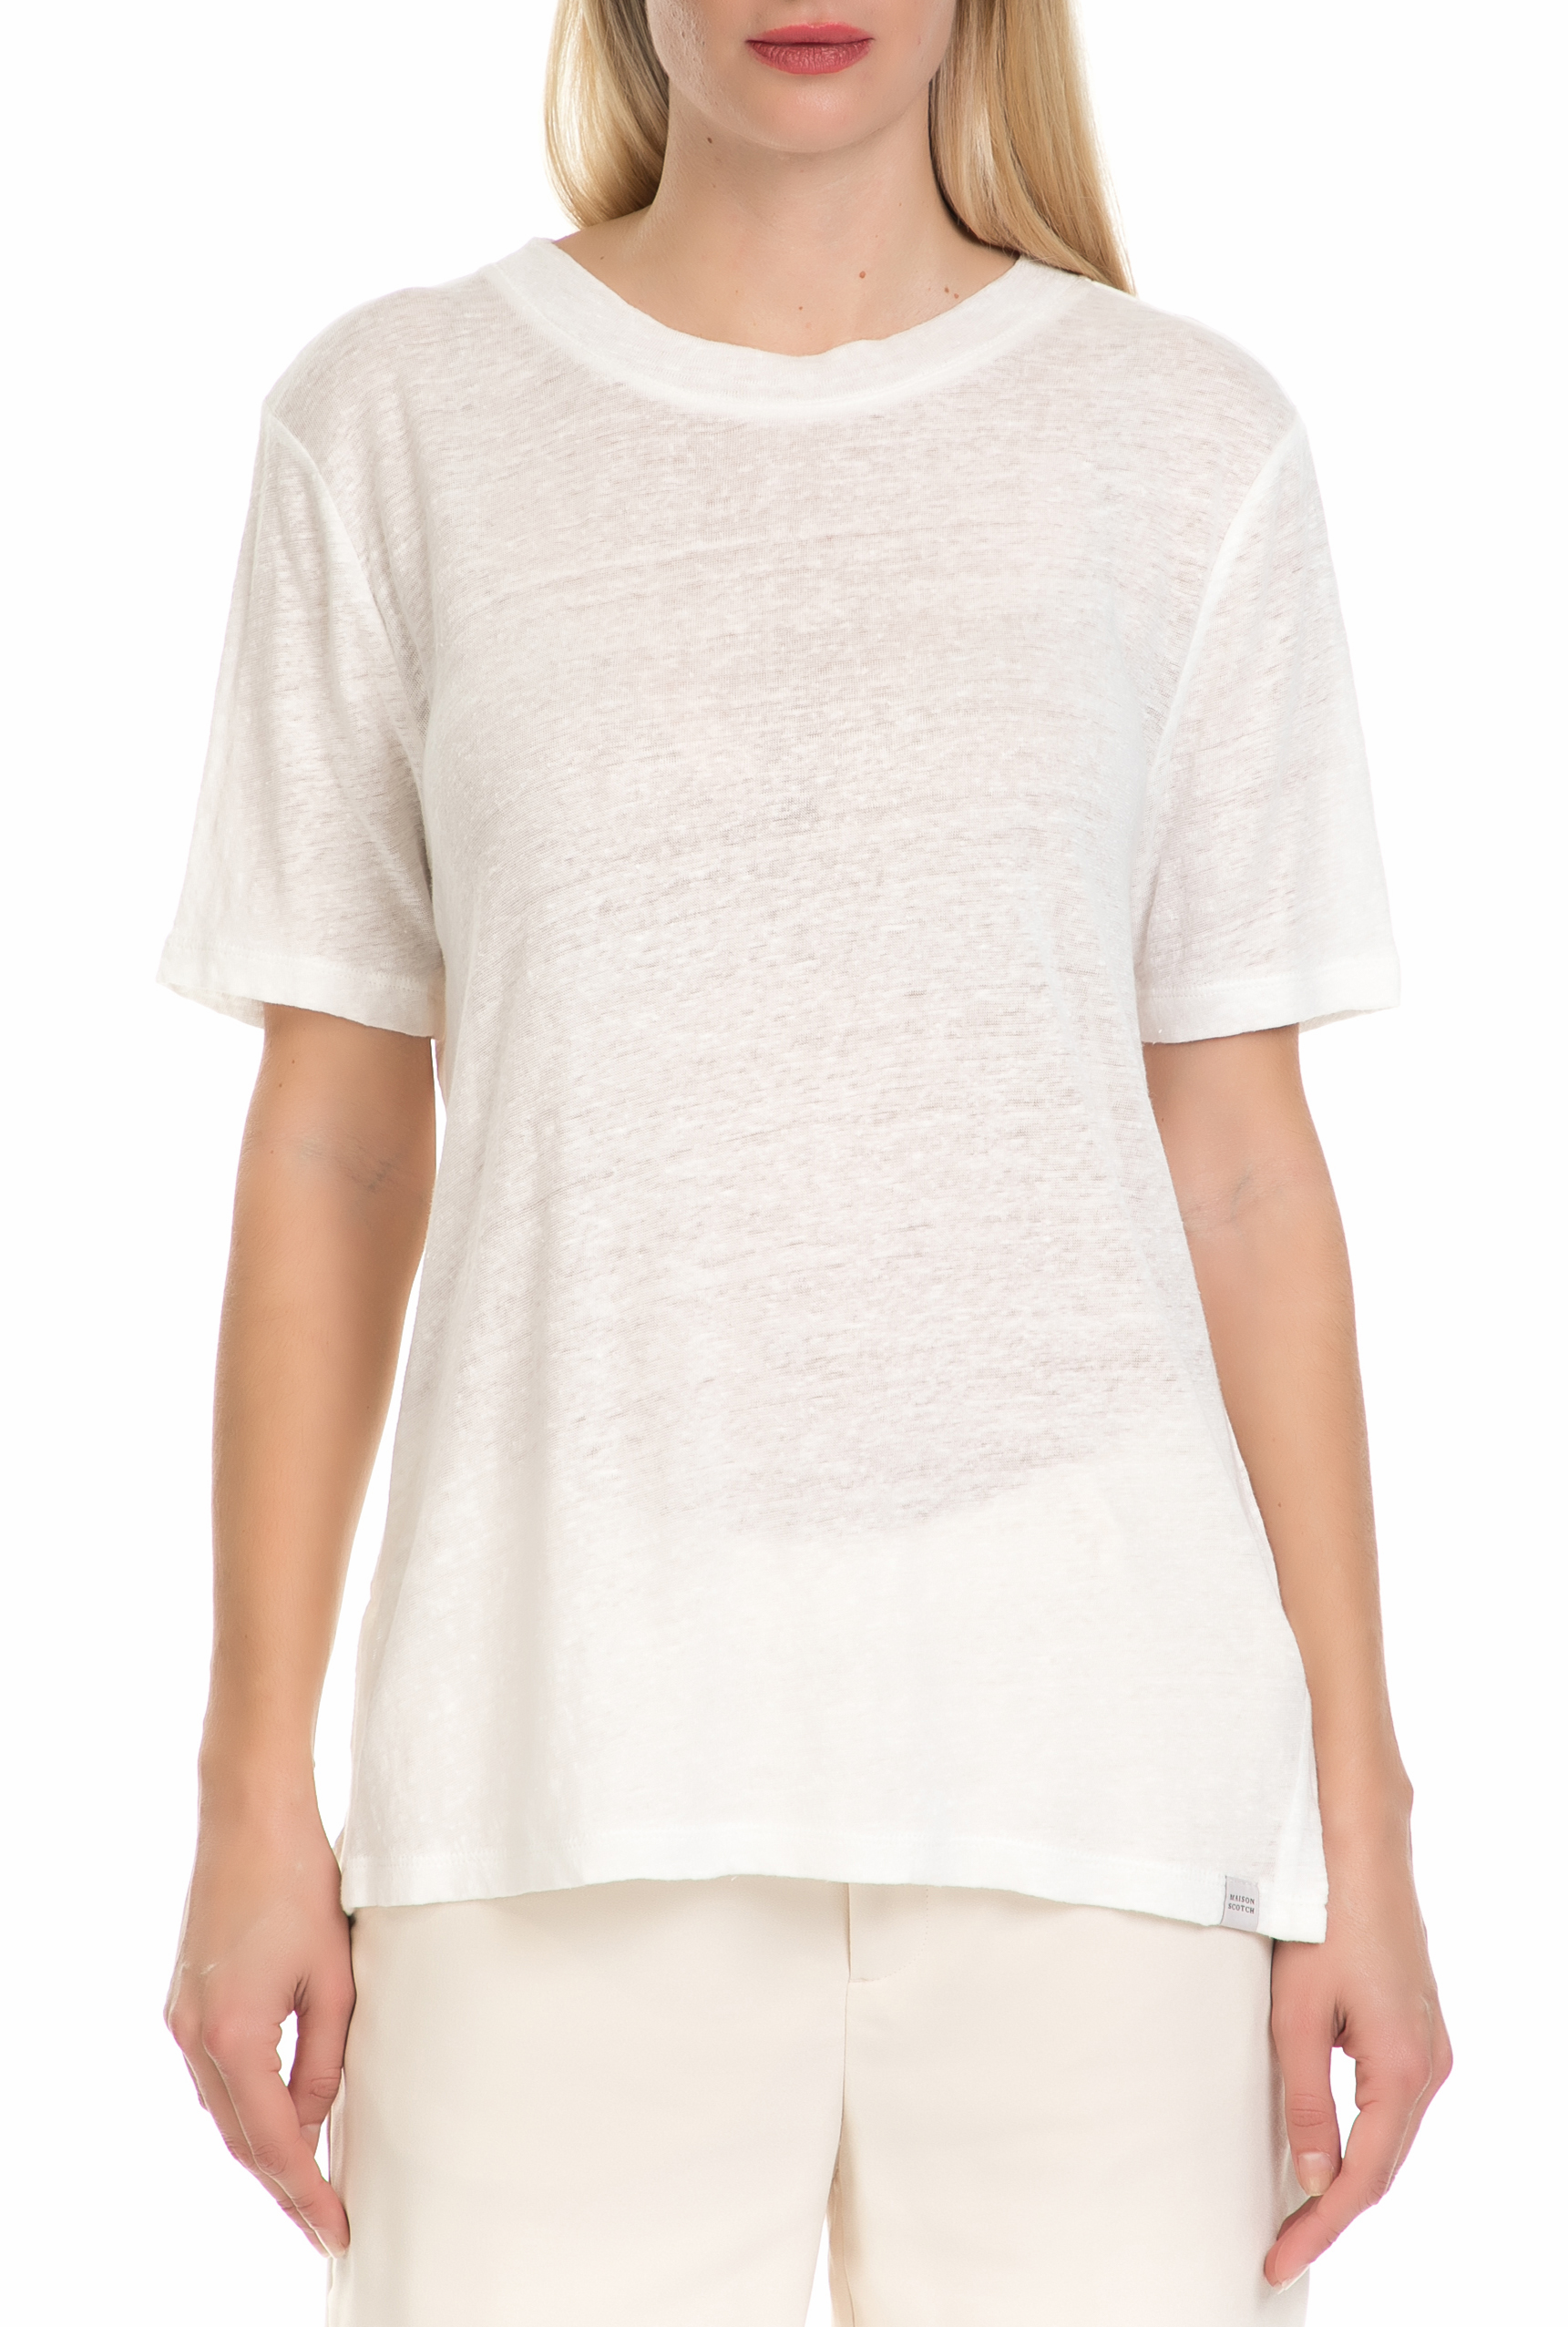 Γυναικεία/Ρούχα/Μπλούζες/Κοντομάνικες SCOTCH & SODA - Γυναικείο T-shirt SCOTCH & SODA λευκό